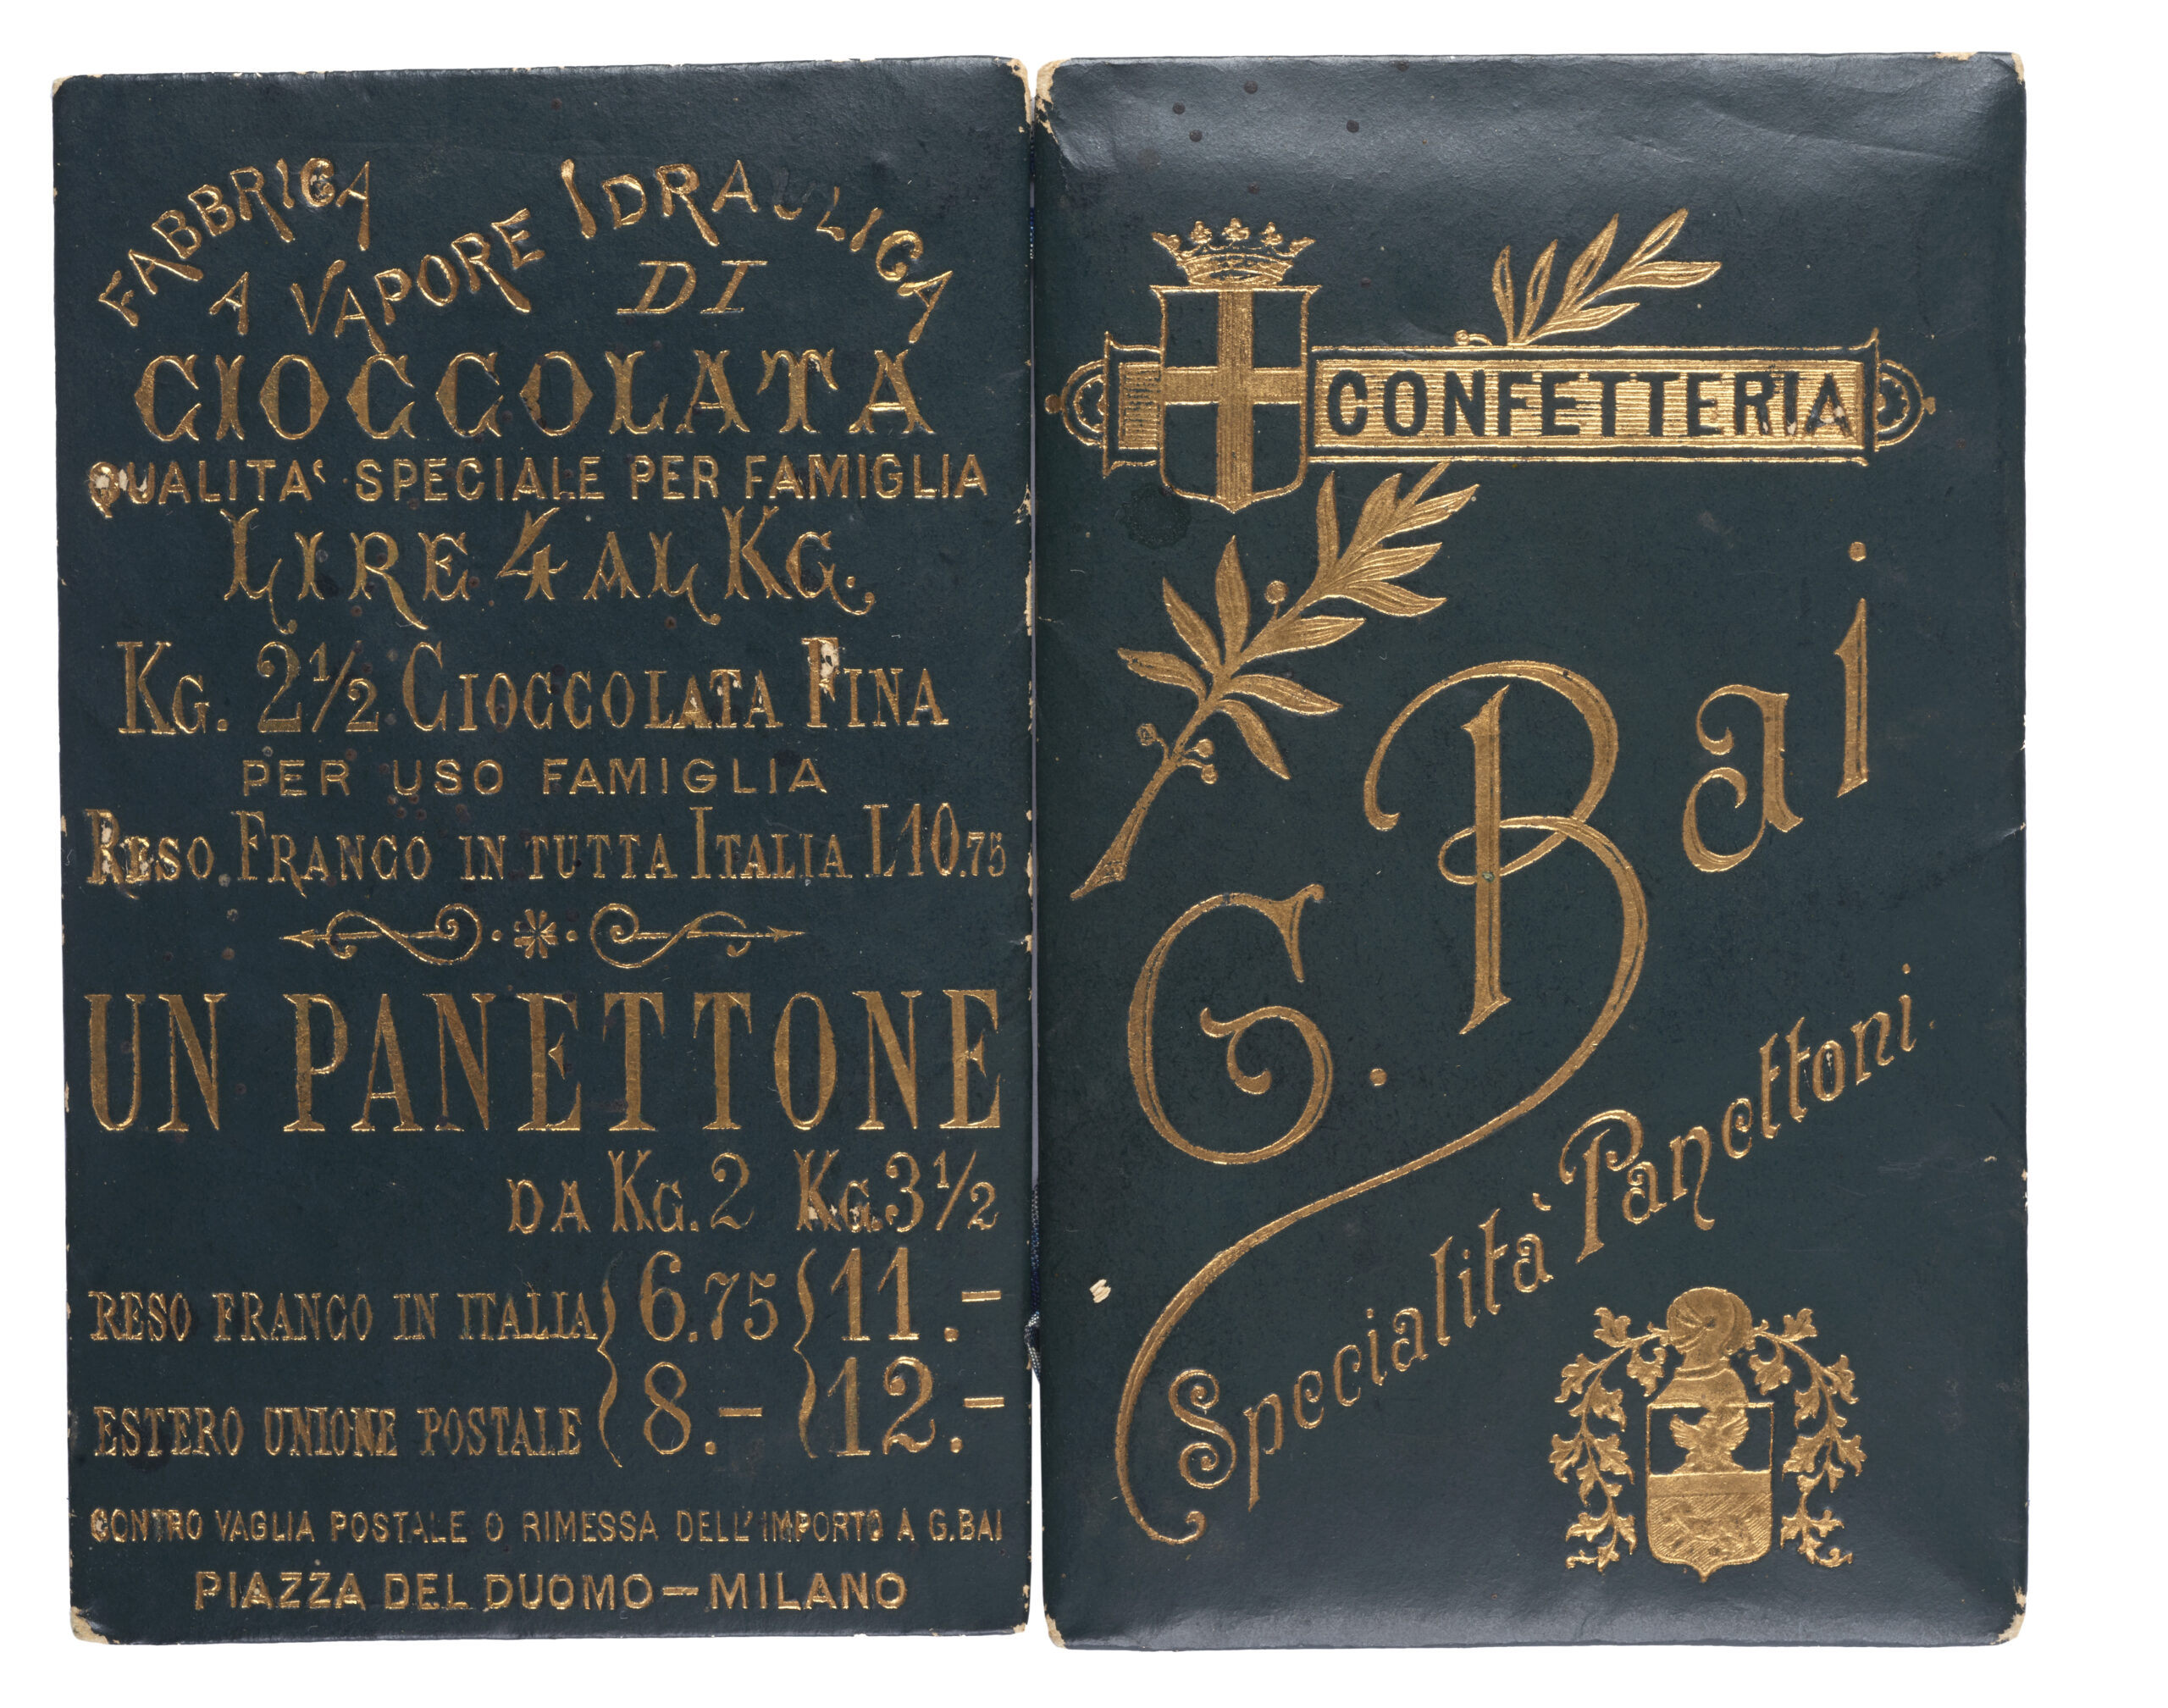 Copertina calendarietto 1894 - Confetteria Baj Specialità Panettoni